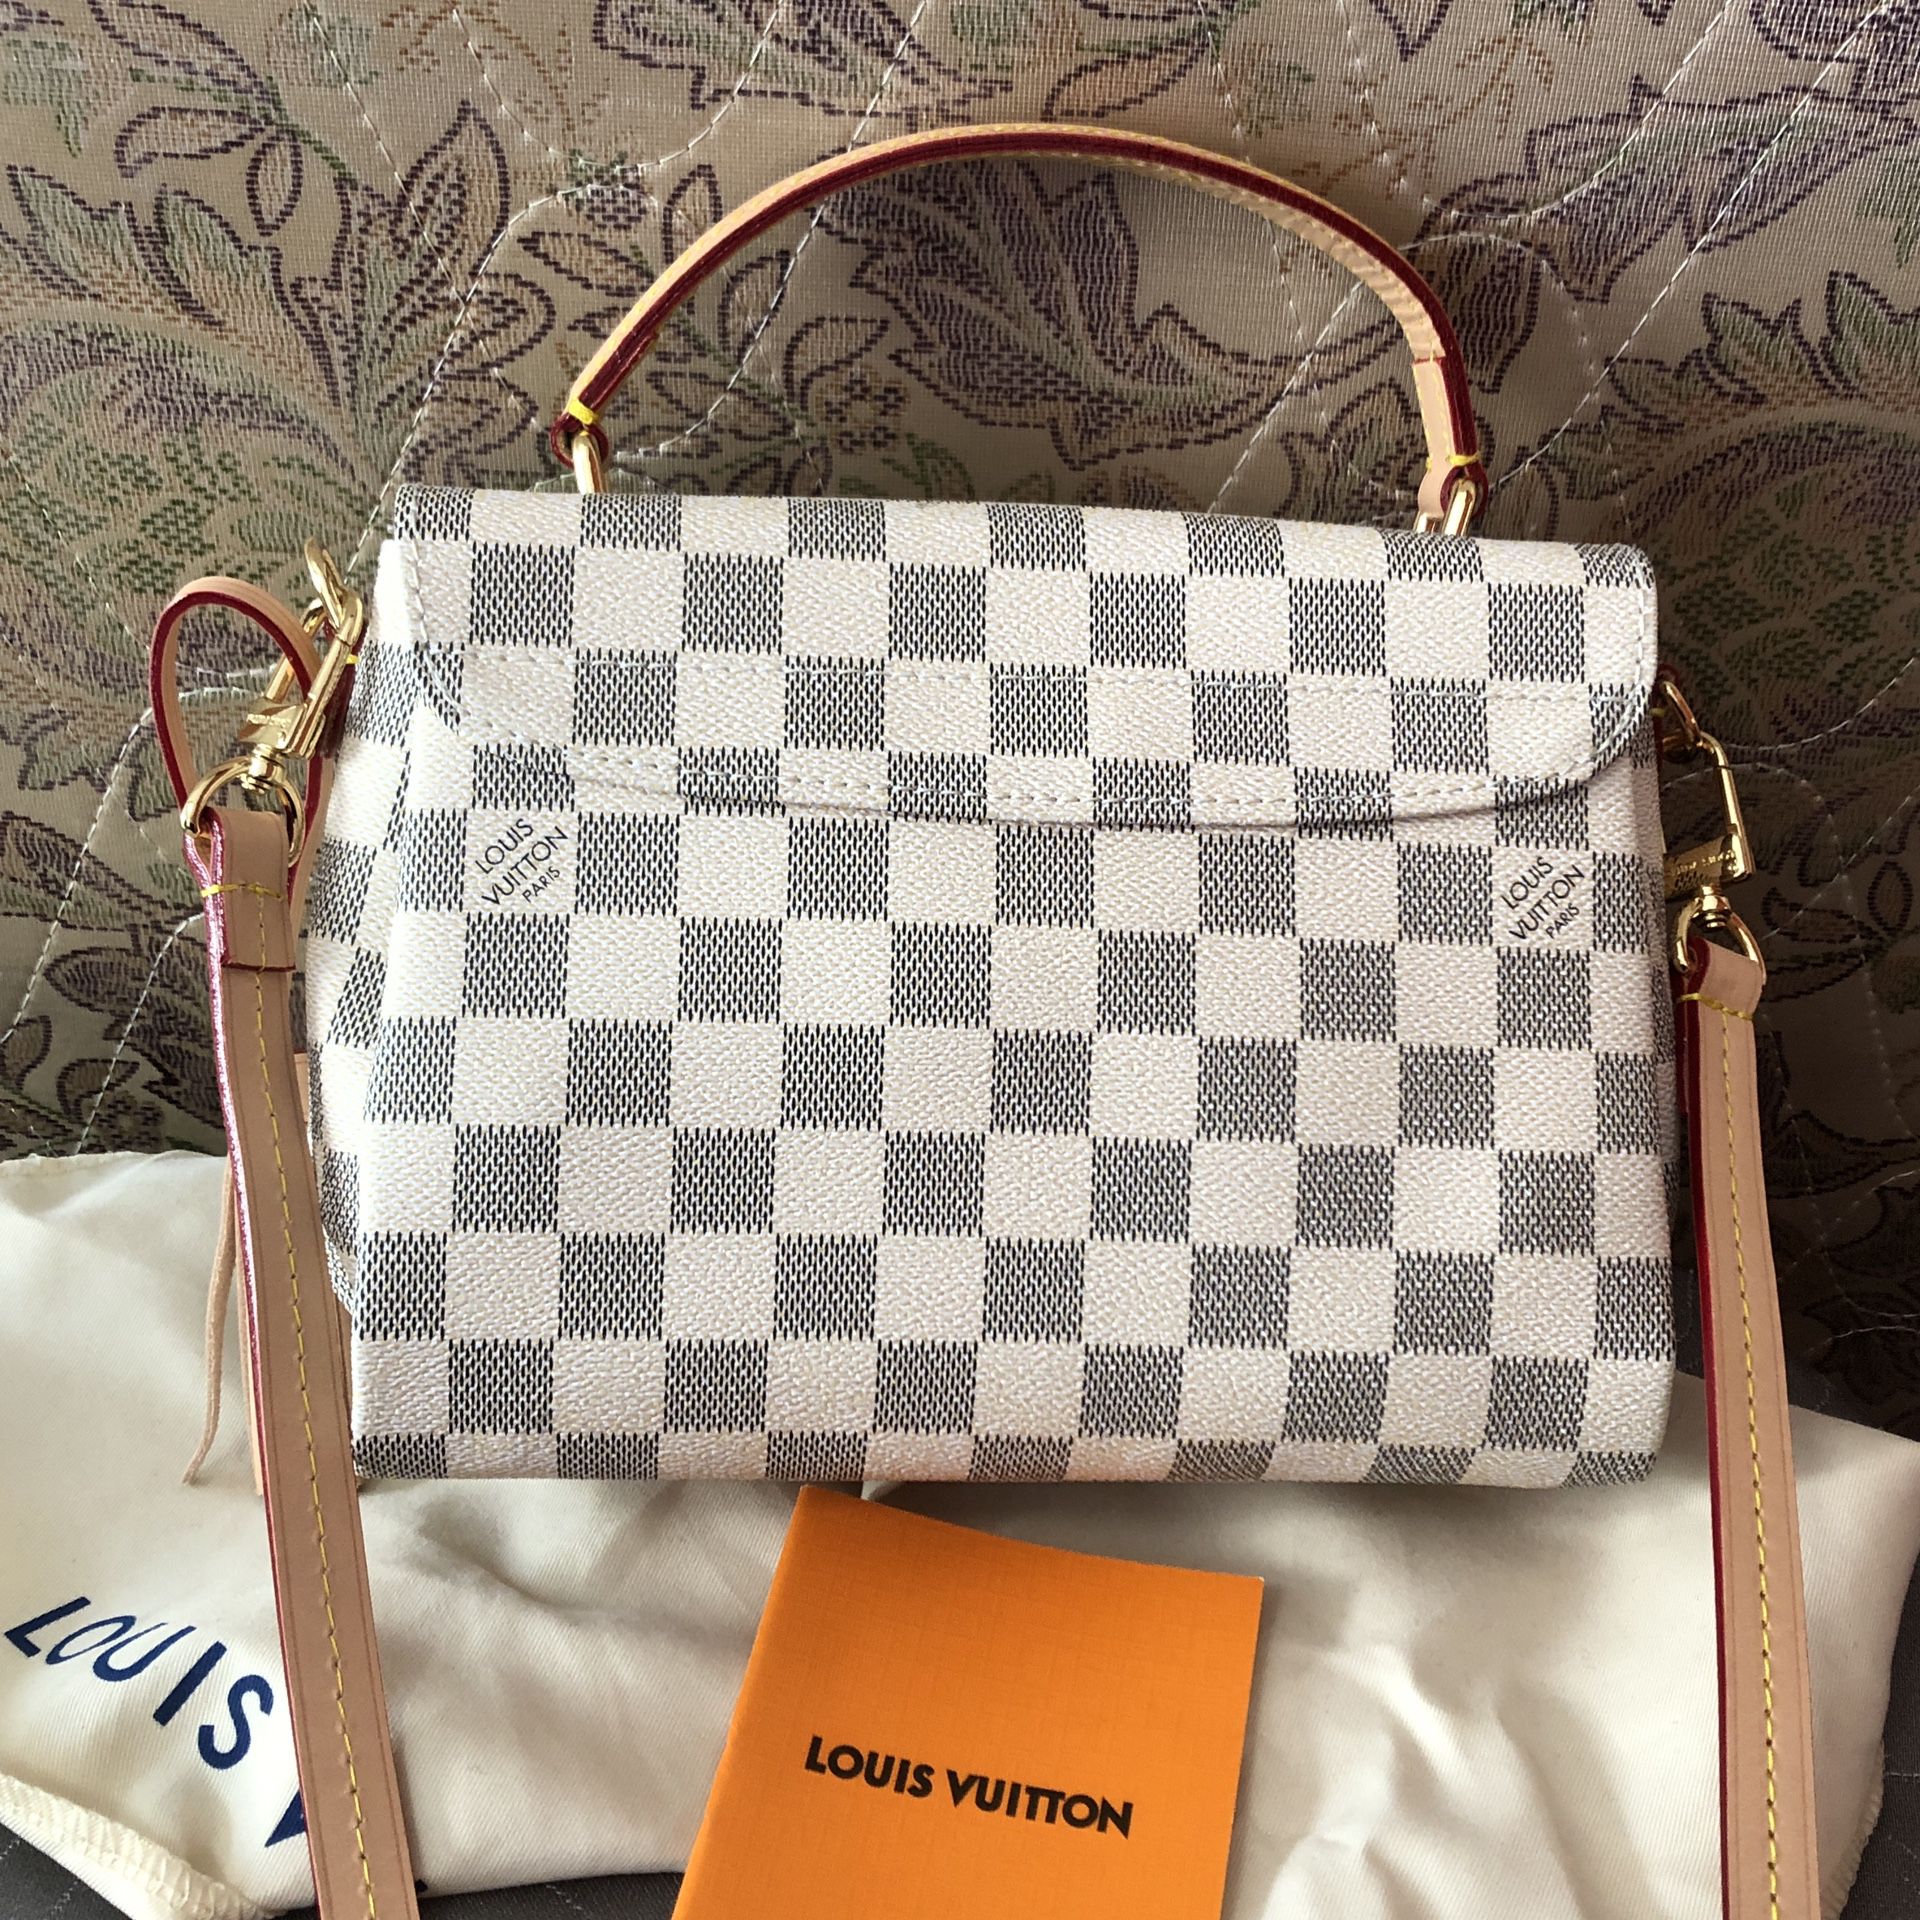 Louis Vuitton - Croisette Damier azur Shoulder bag - Catawiki